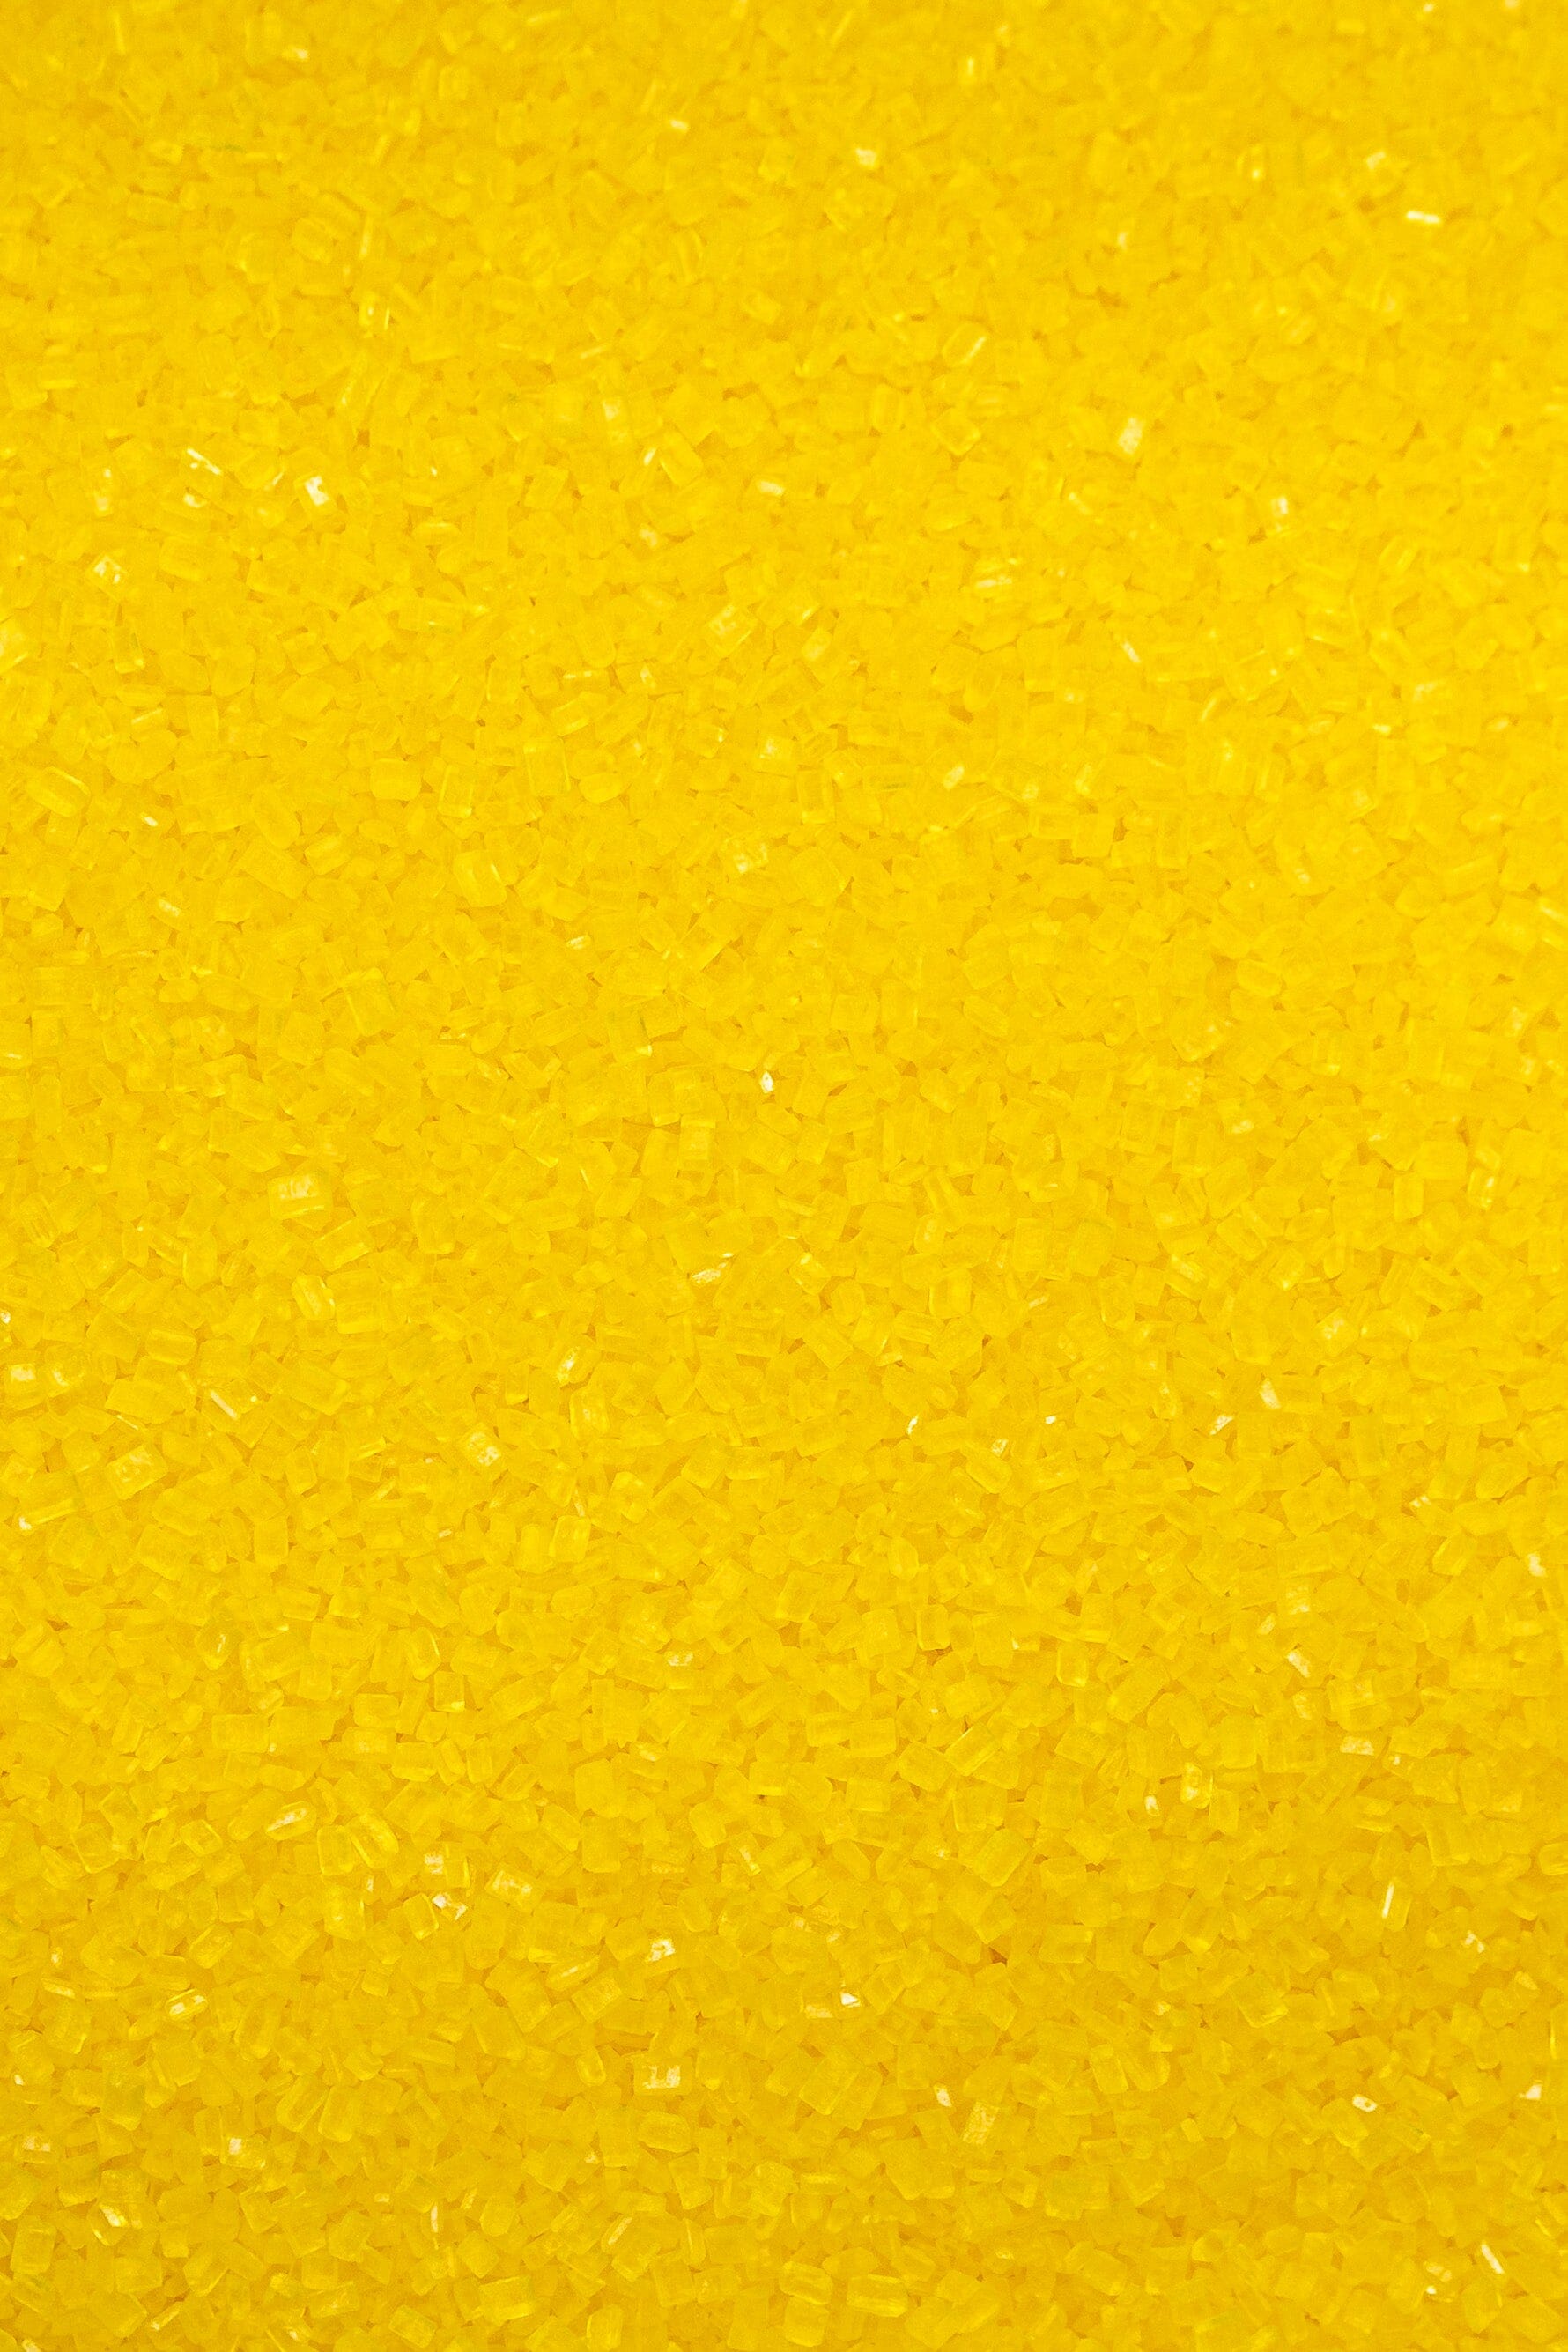 Sugar Crystals - Yellow Sprinkles Sprinkly 